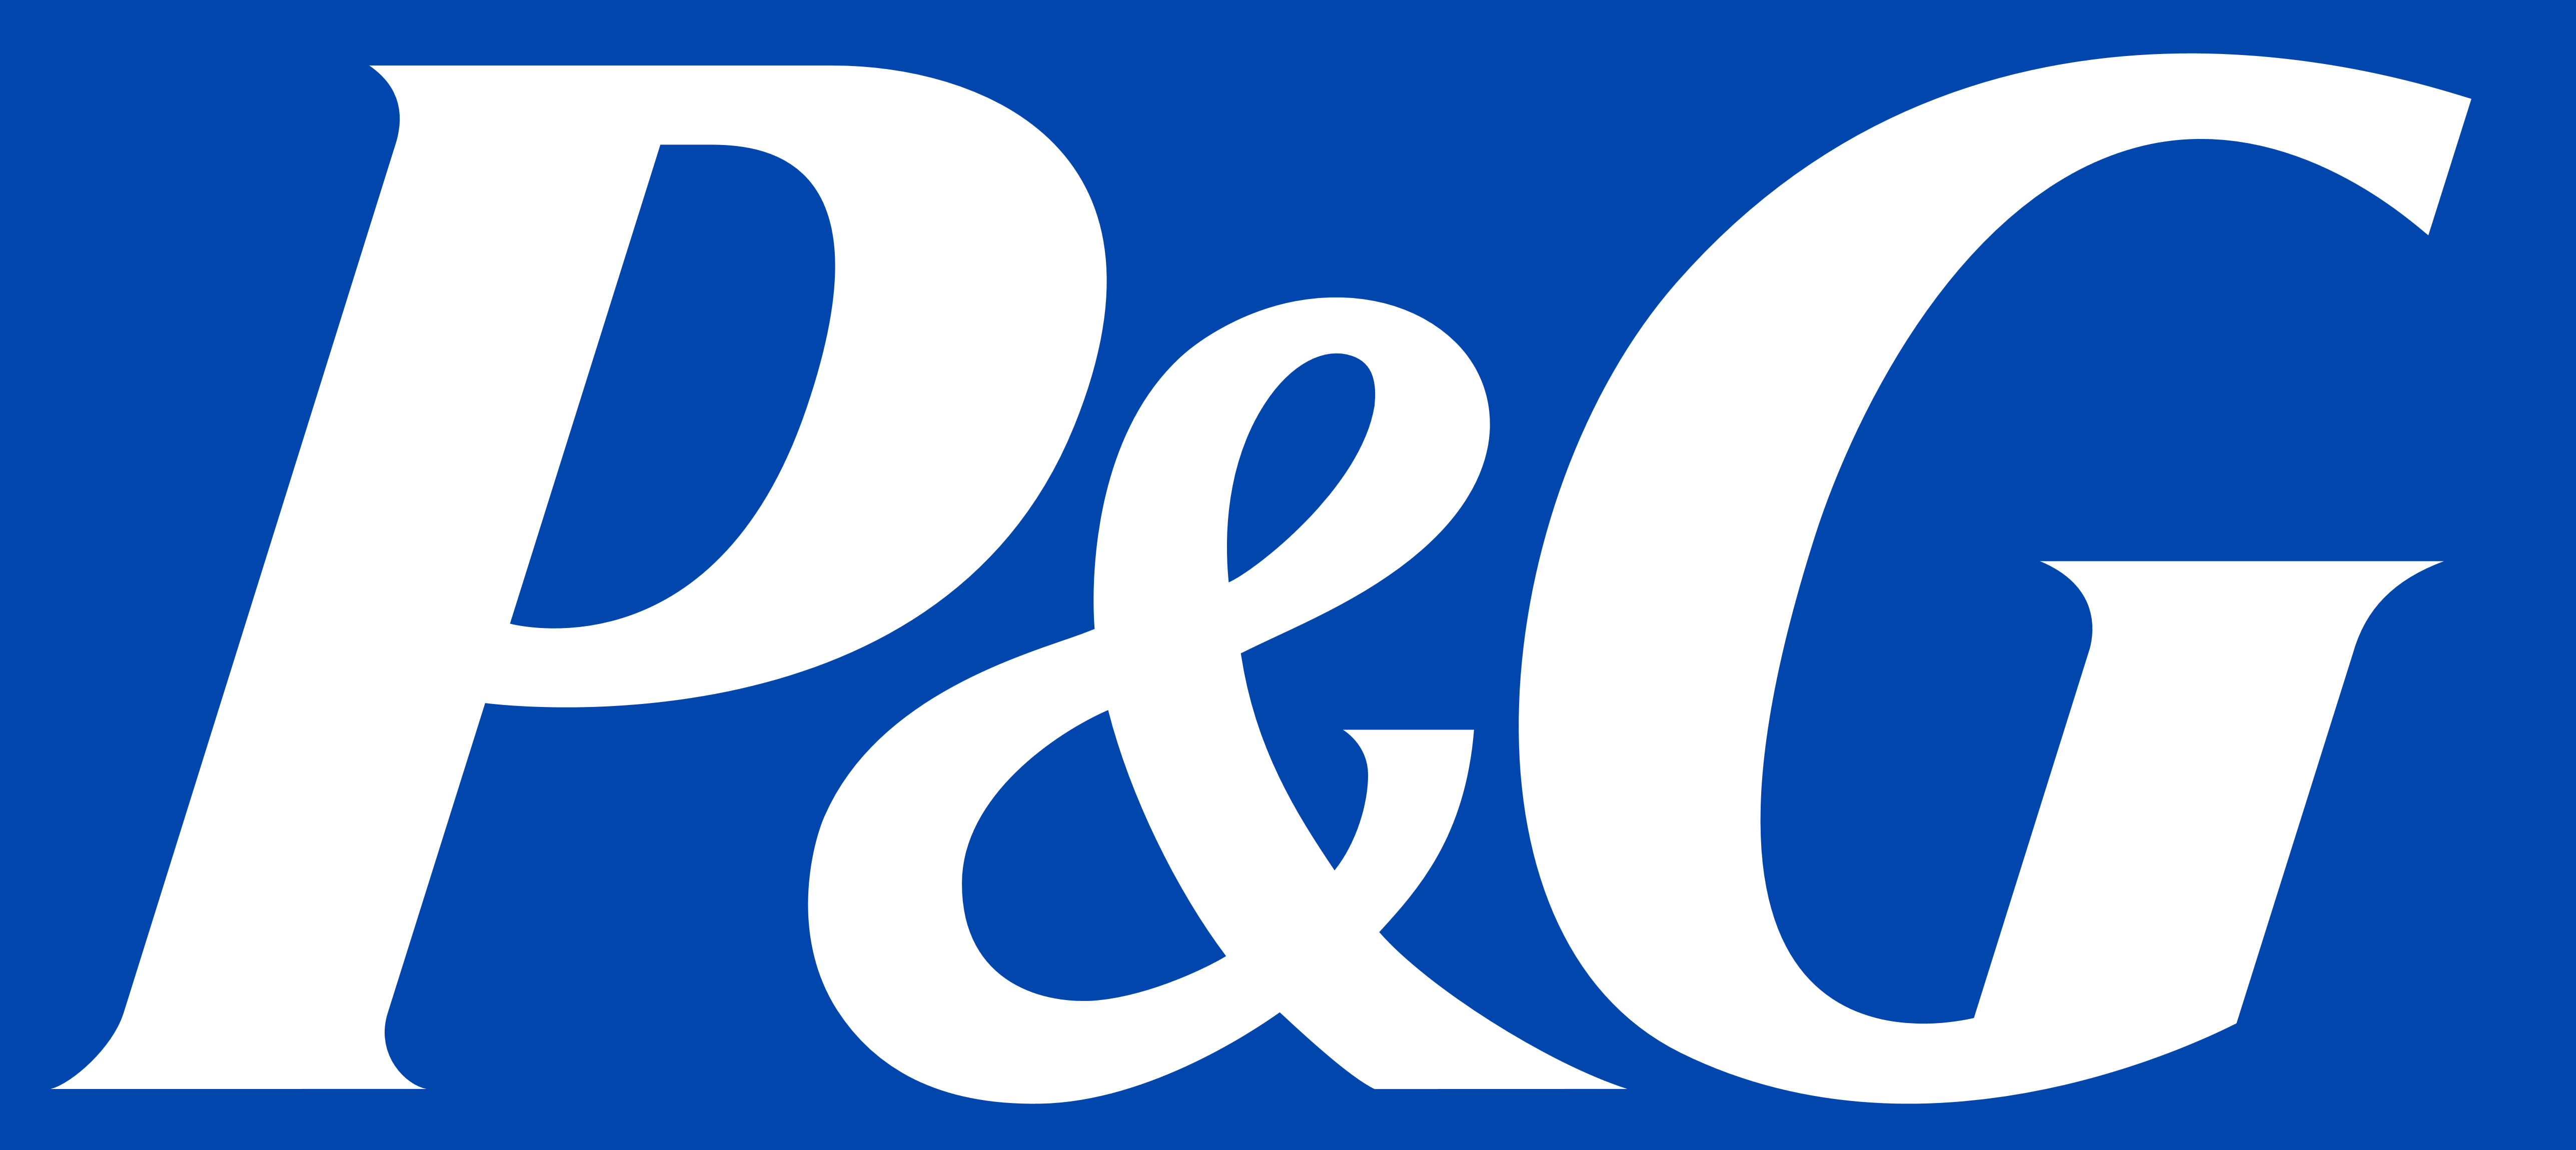 P G Procter Gamble Logos Download